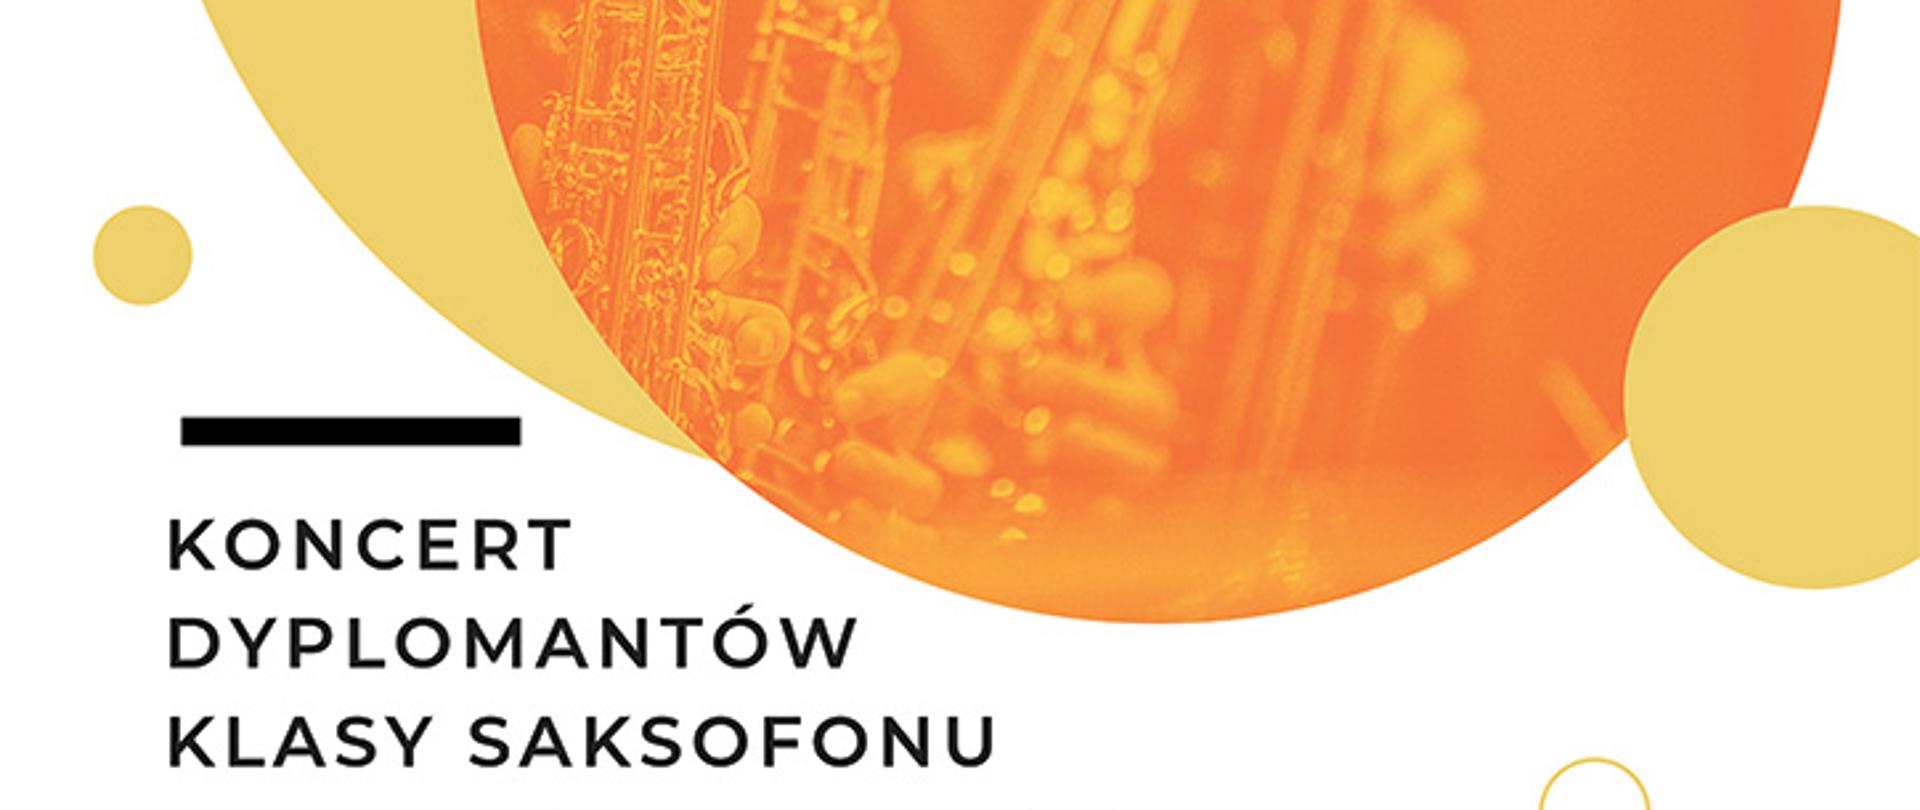 białe tło, zdjęcie saksofonu, napisy Koncert Dyplomantów klasy saksofonu prof. Bernarda Steuera z POSM II st. im. K. Szymanowskiego